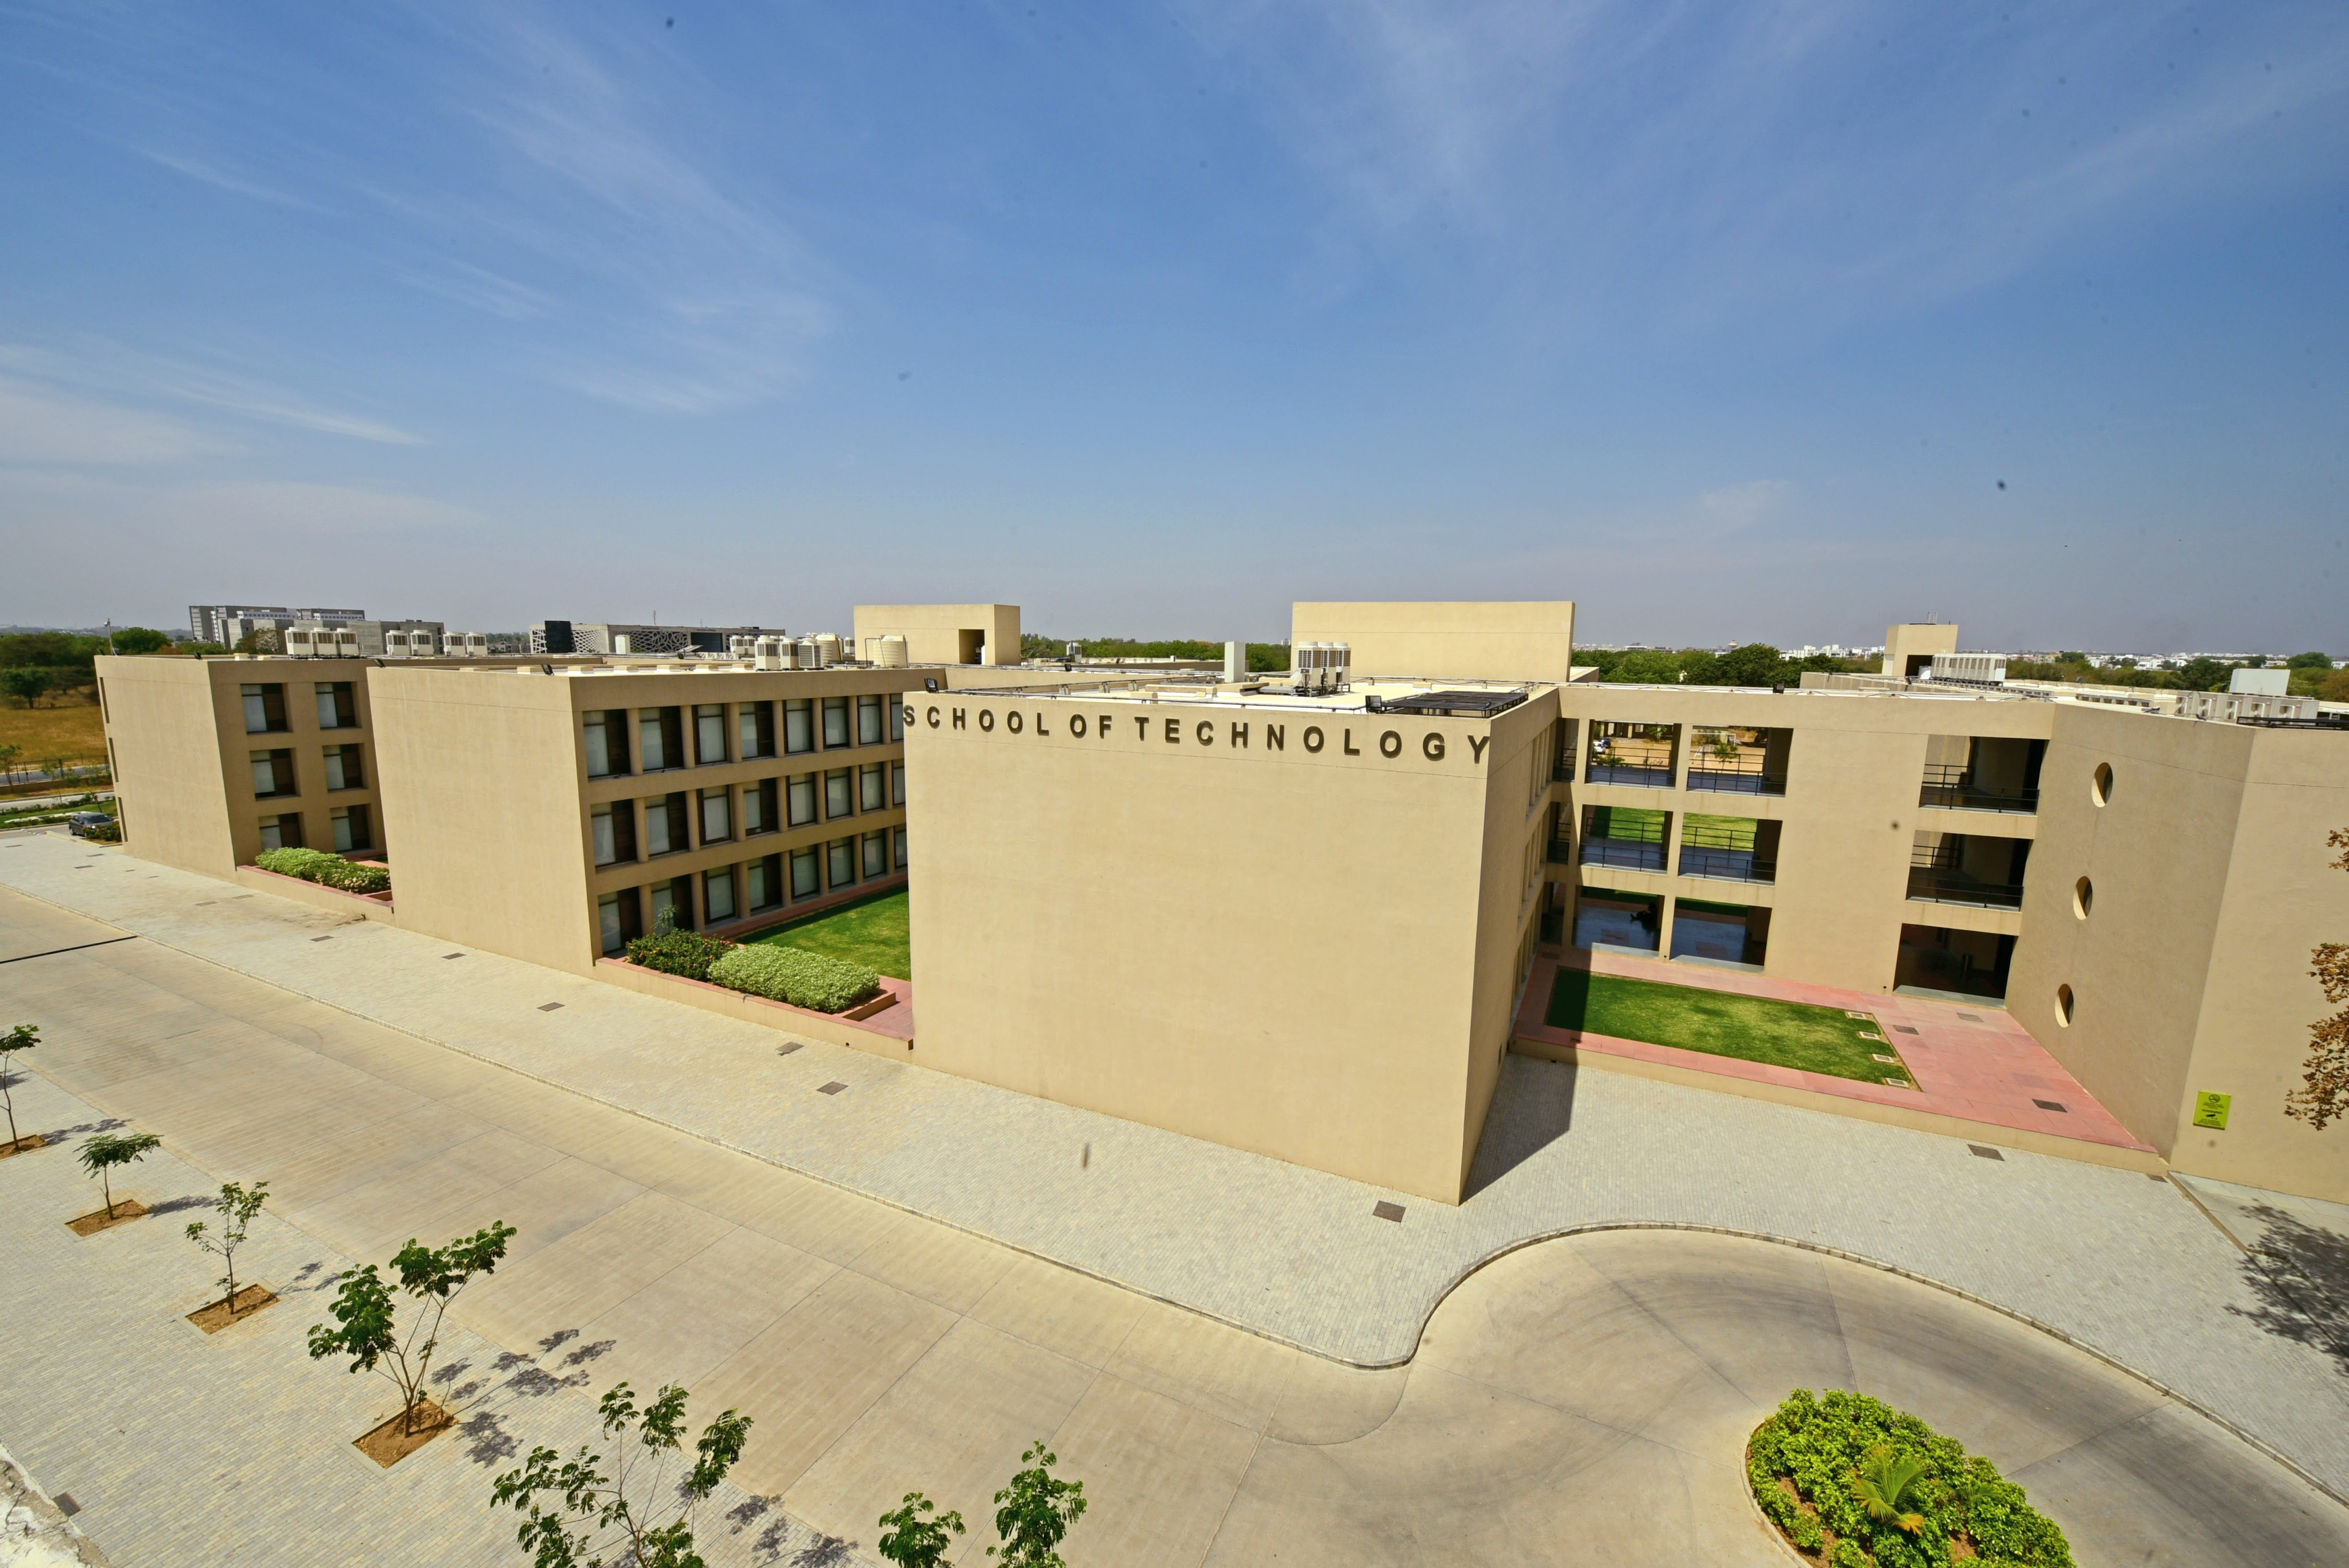 SoT, Pandit Deendayal Energy University (PDEU) Campus Building